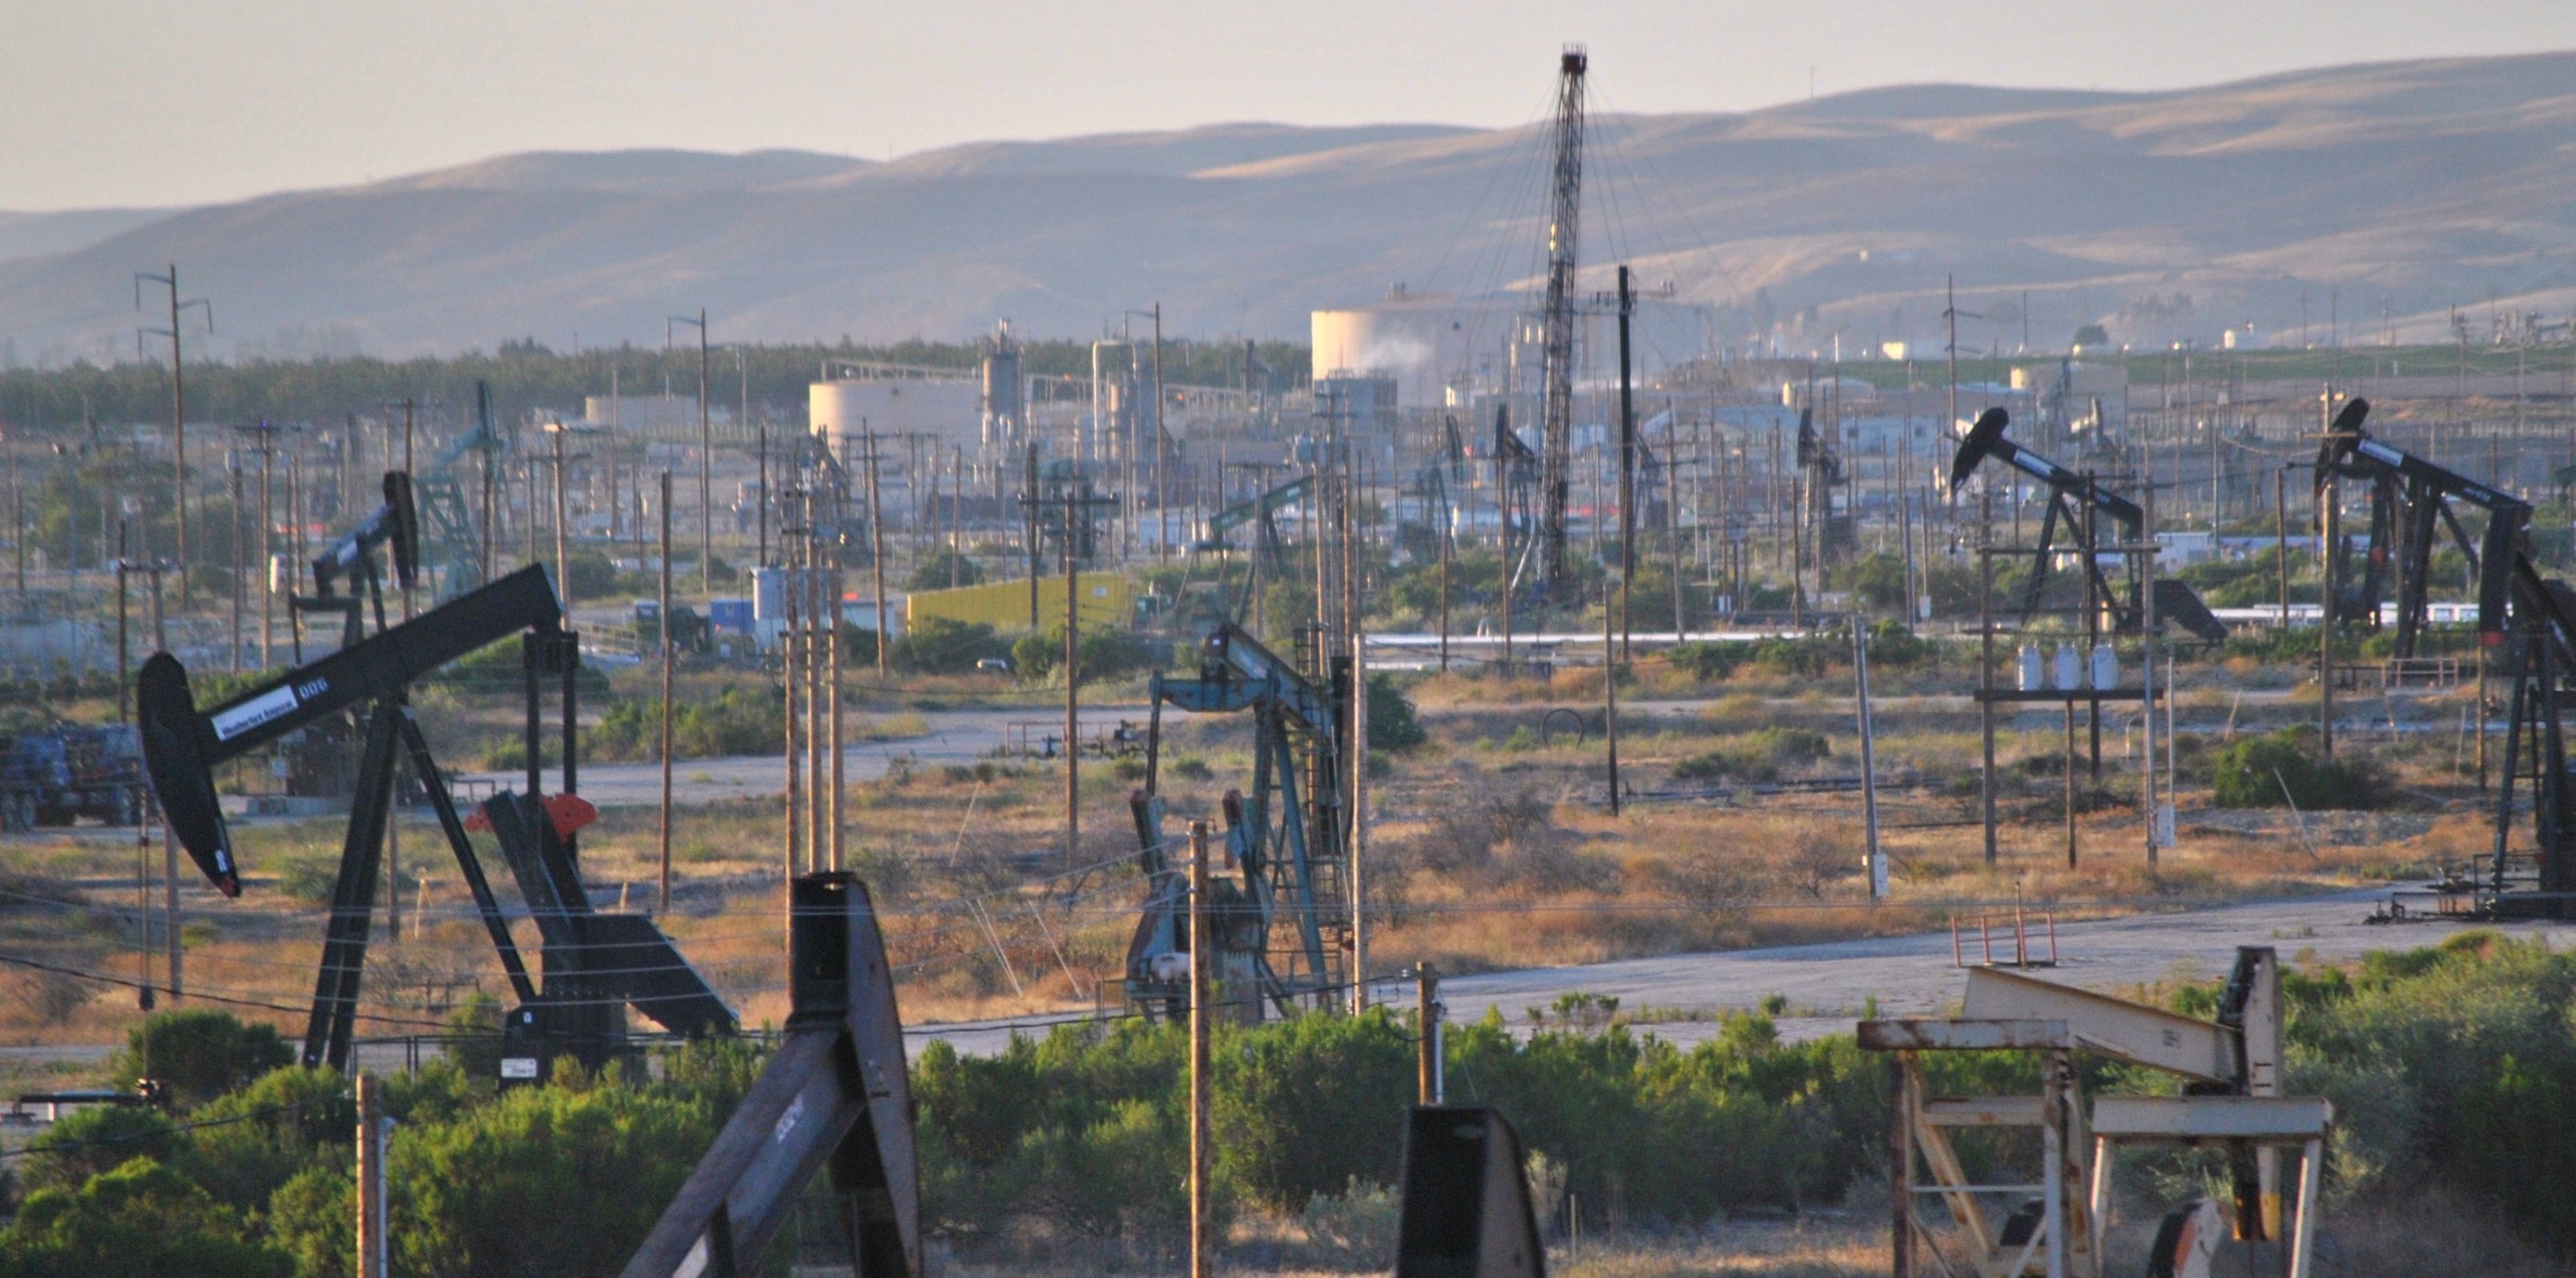 The San Ardo oil field in